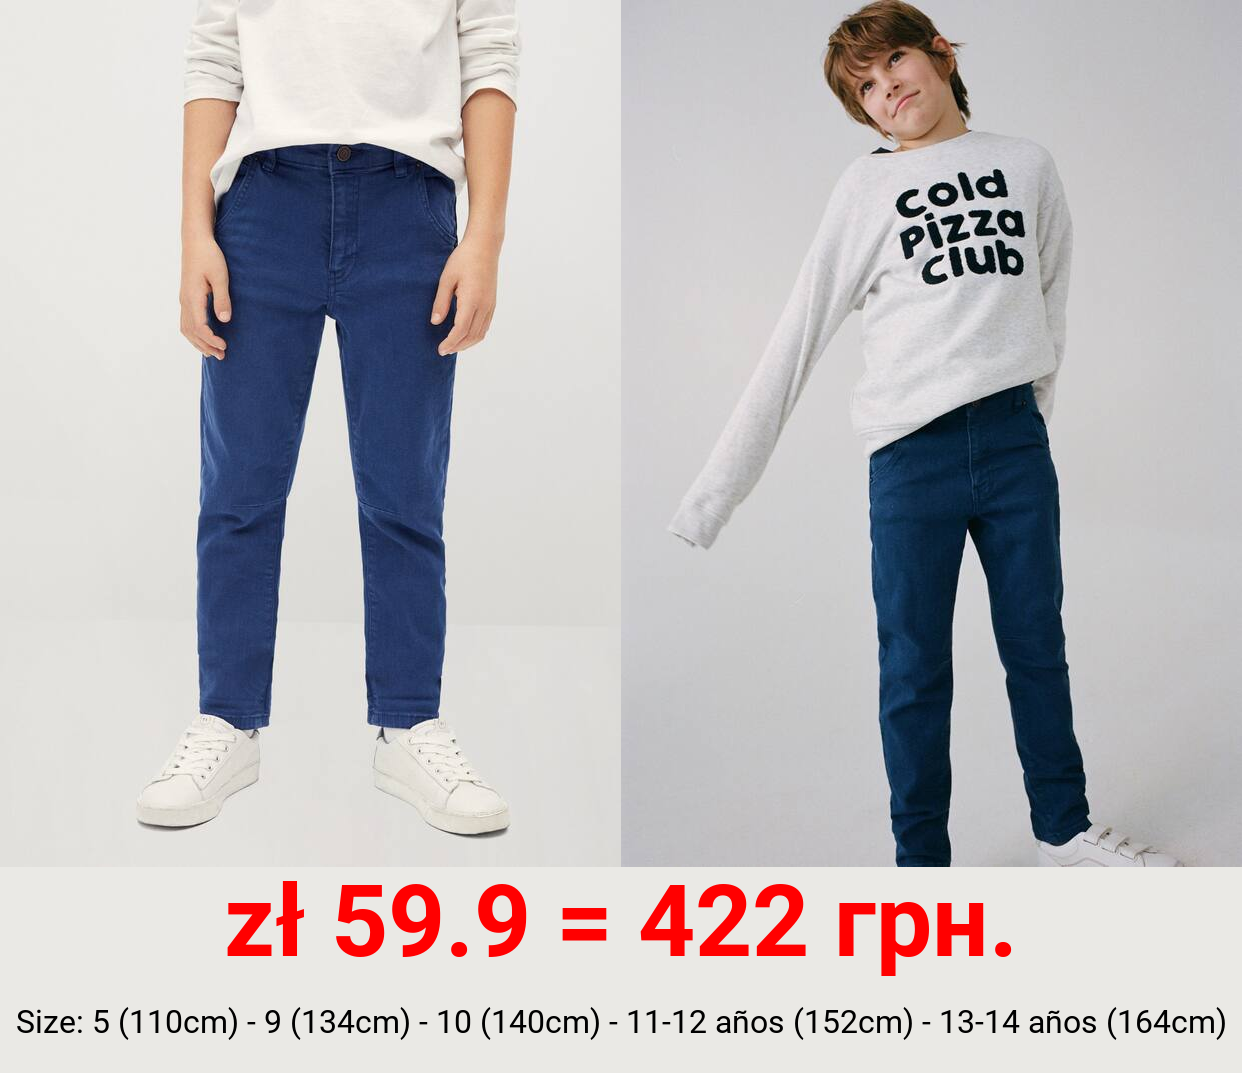 Jeans regular-fit